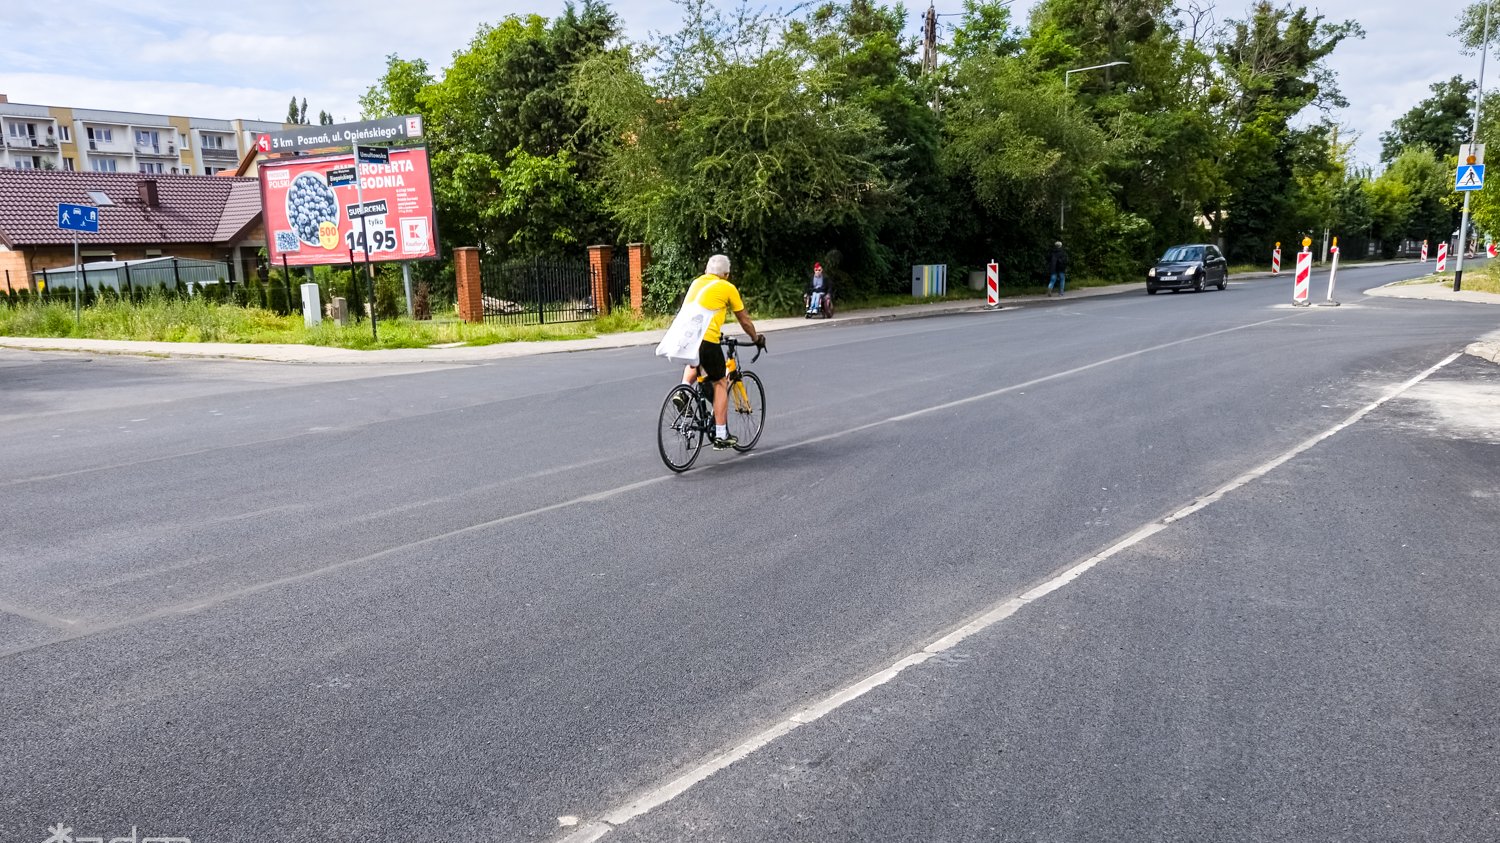 Zdjęcie przedstawia jeznię, po której jedzie rowerzysta.